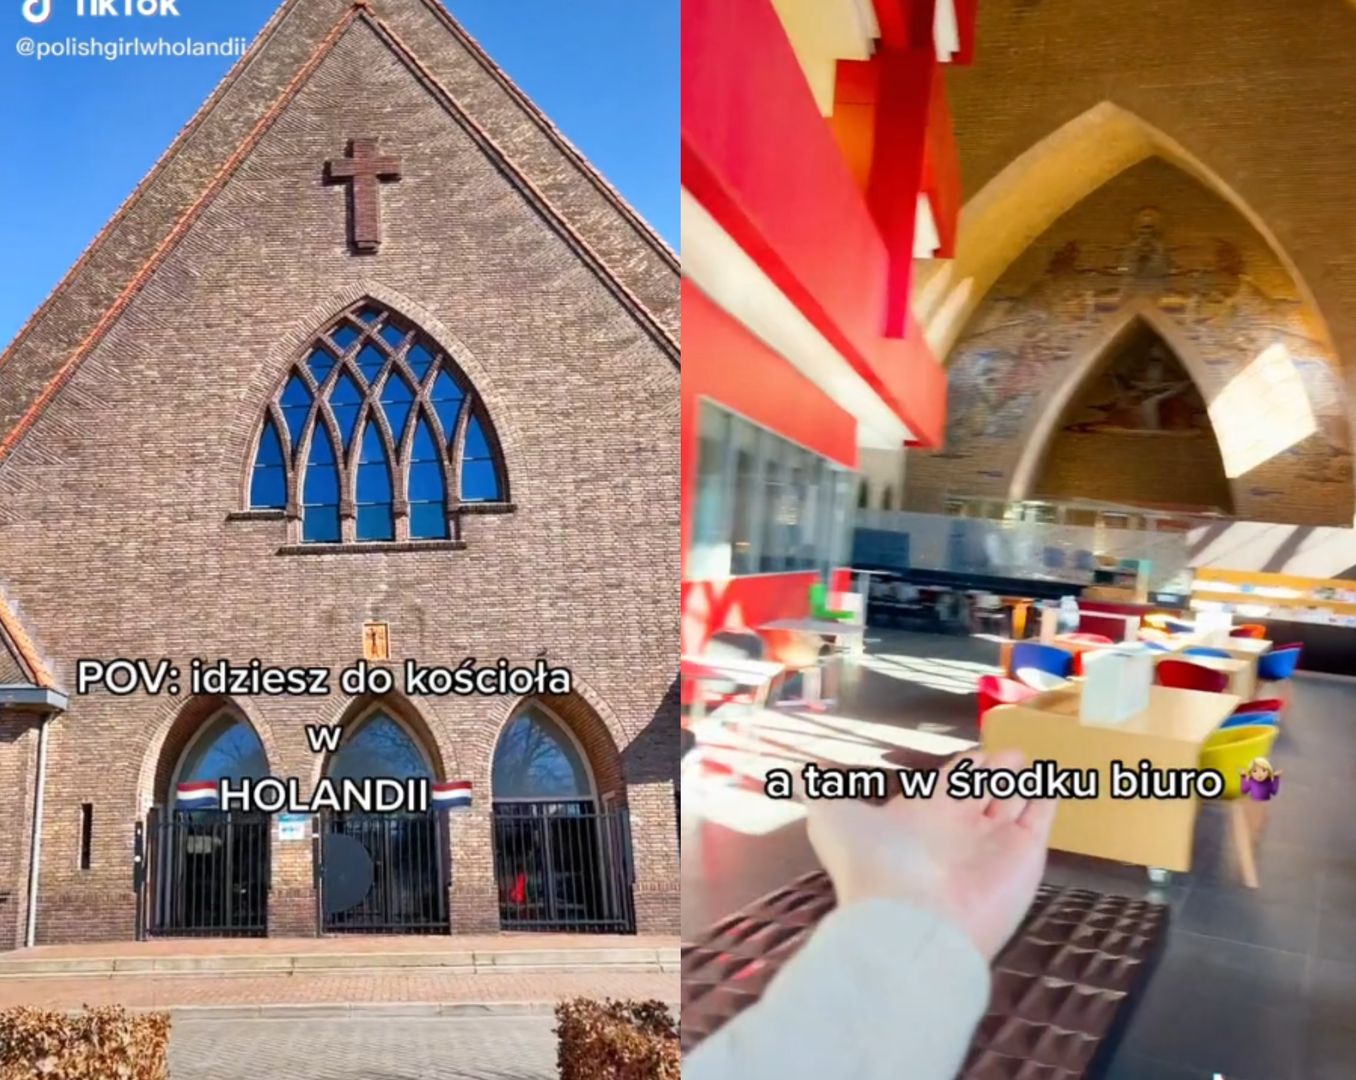 Kościół w Holandii. Polka pokazała, co zastała w środku